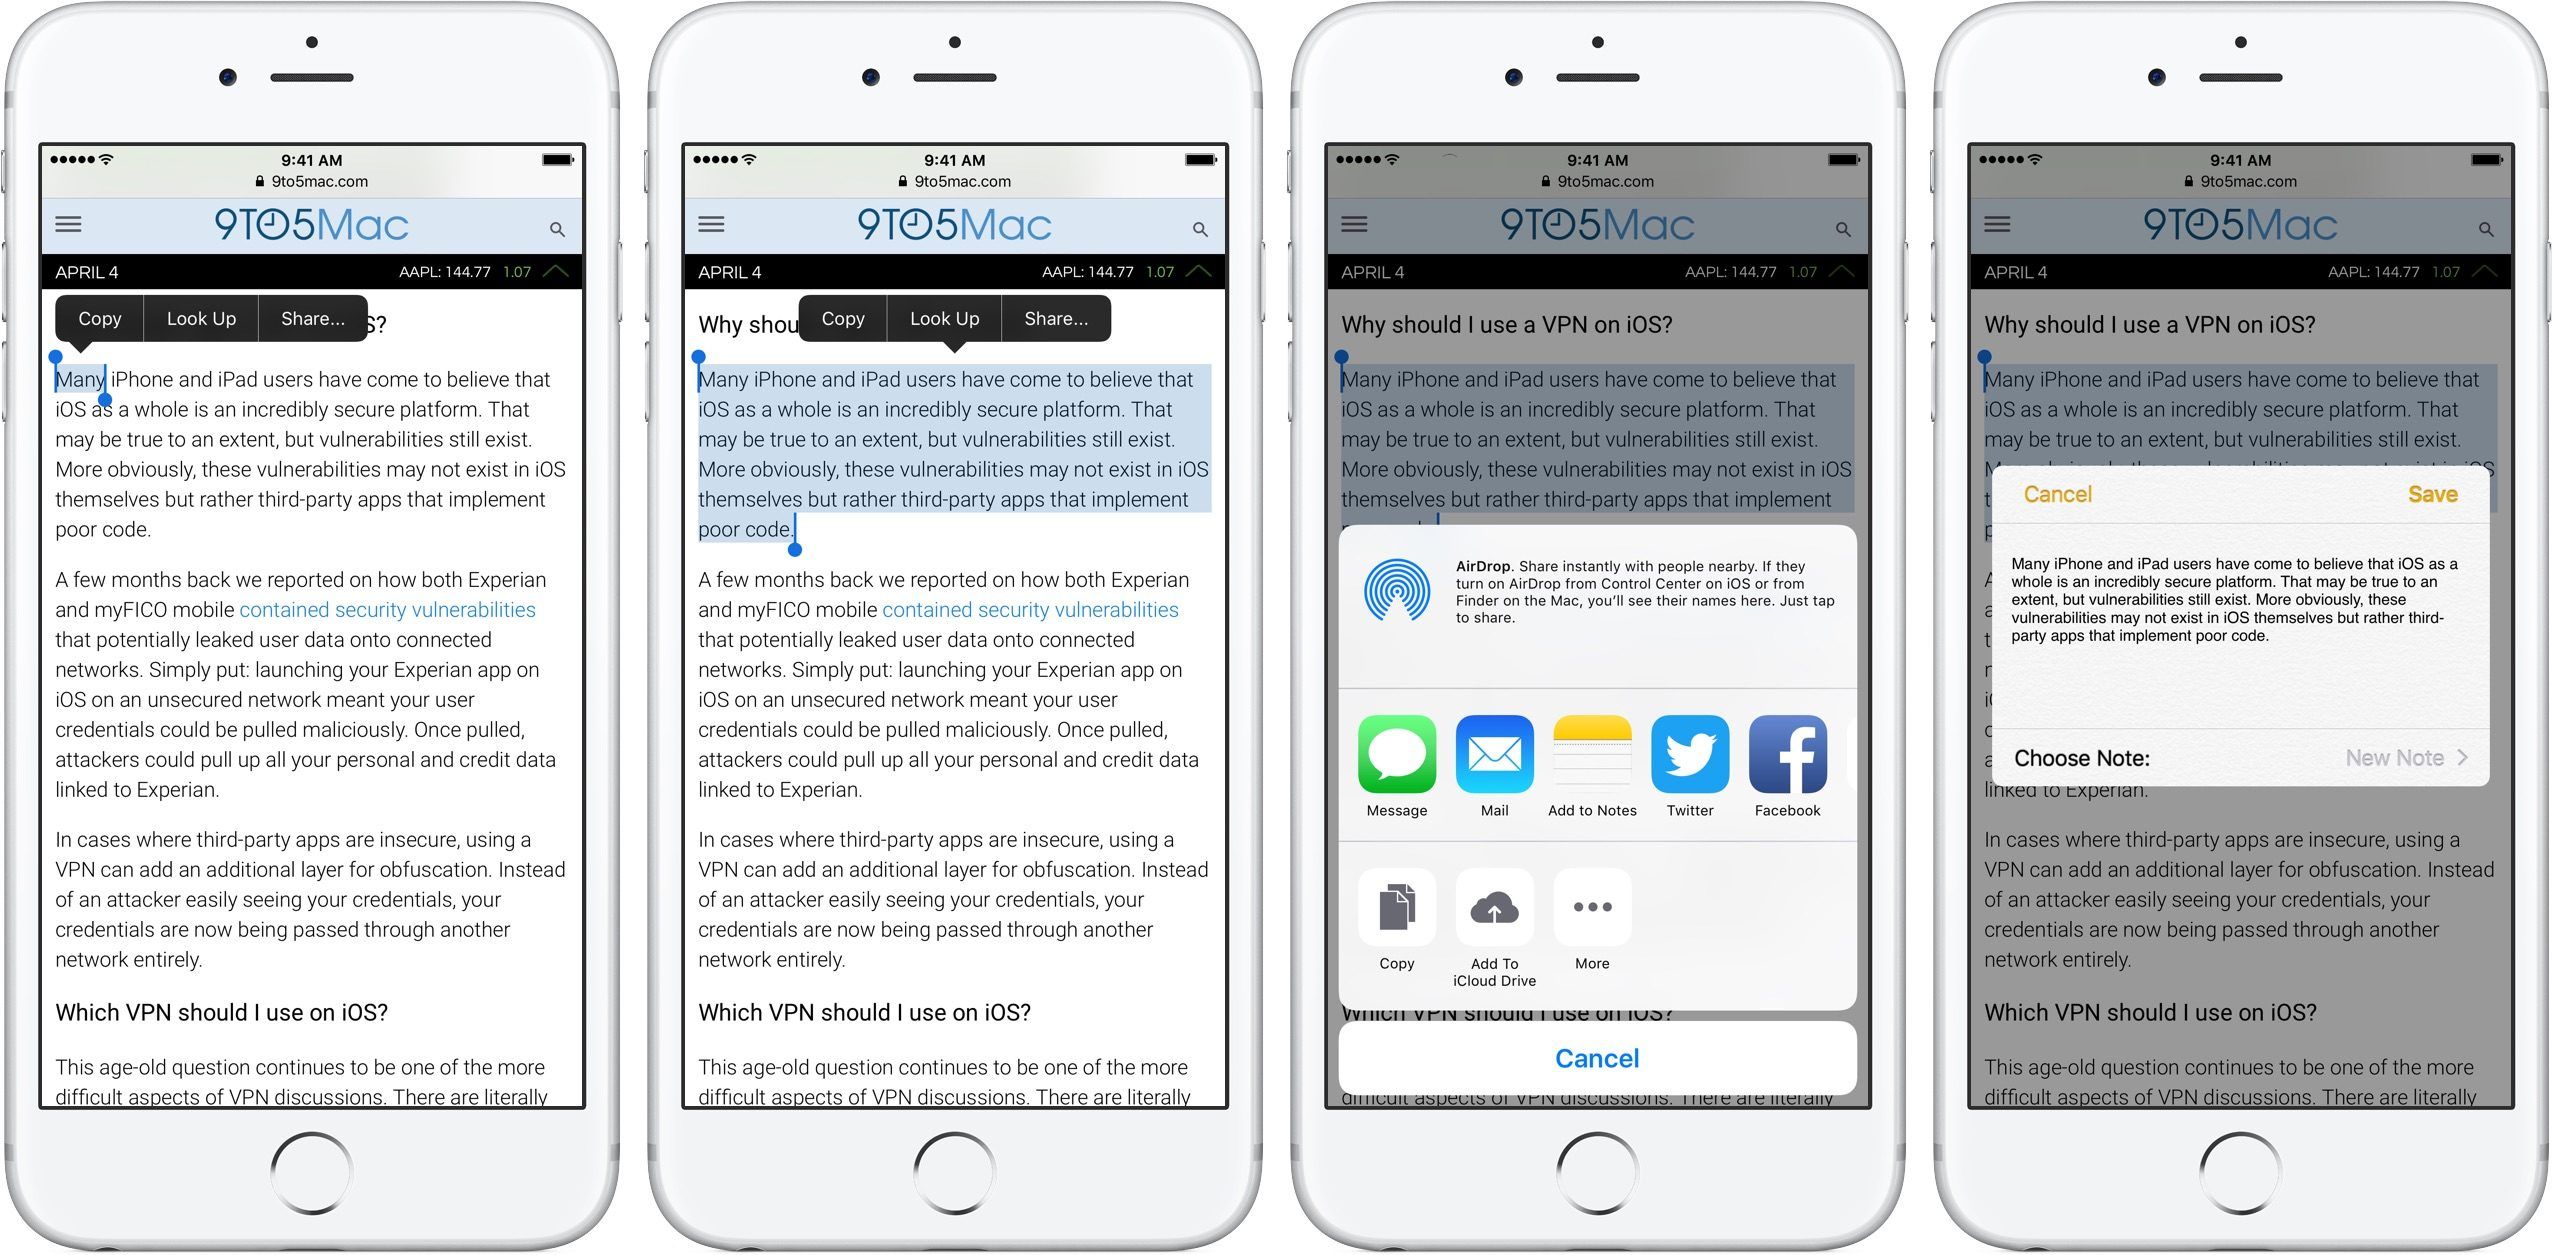 Изображение, показывающее выделение текста и использование опции обмена в iOS